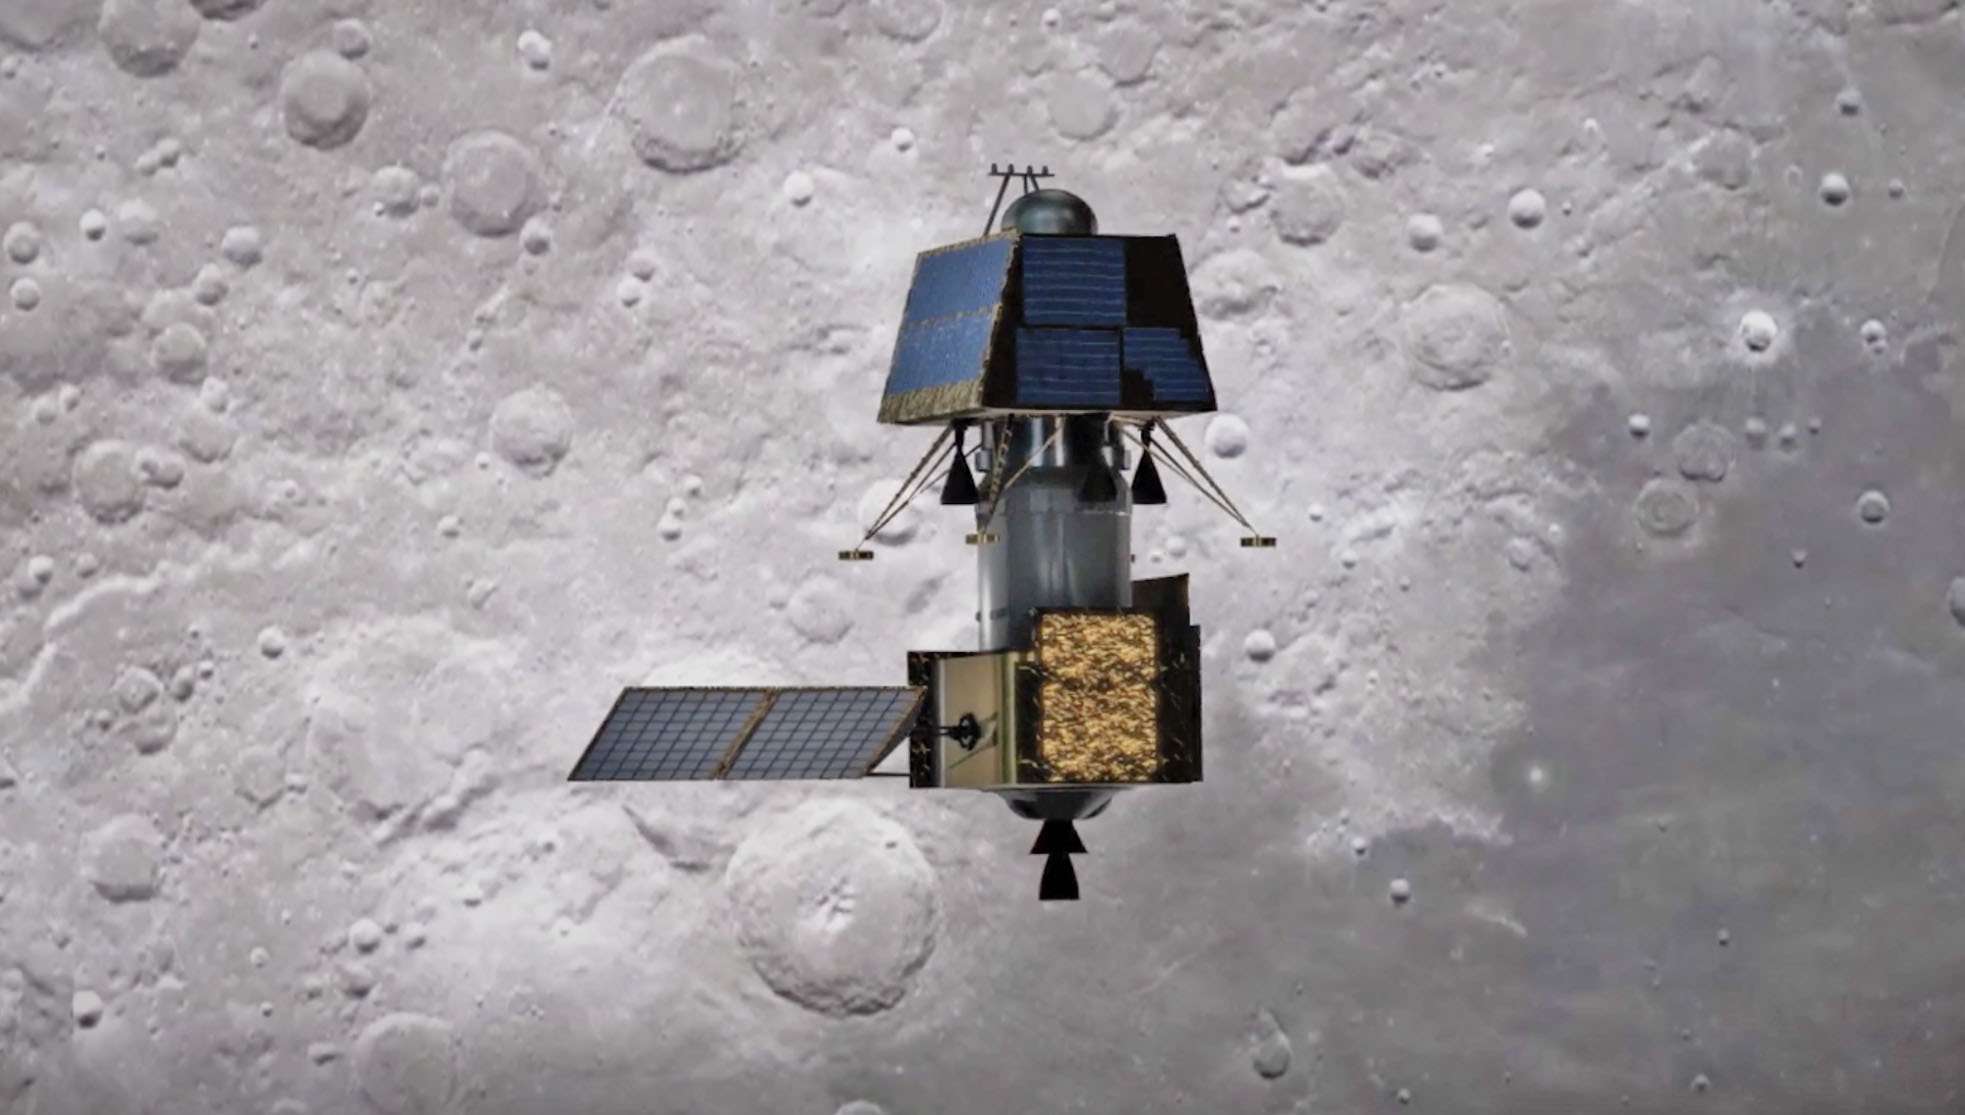 चांद के और नज़दीक पहुंचा चंद्रयान-2, चौथी बार सफलतापूर्वक बढ़ाई गई ऑर्बिट